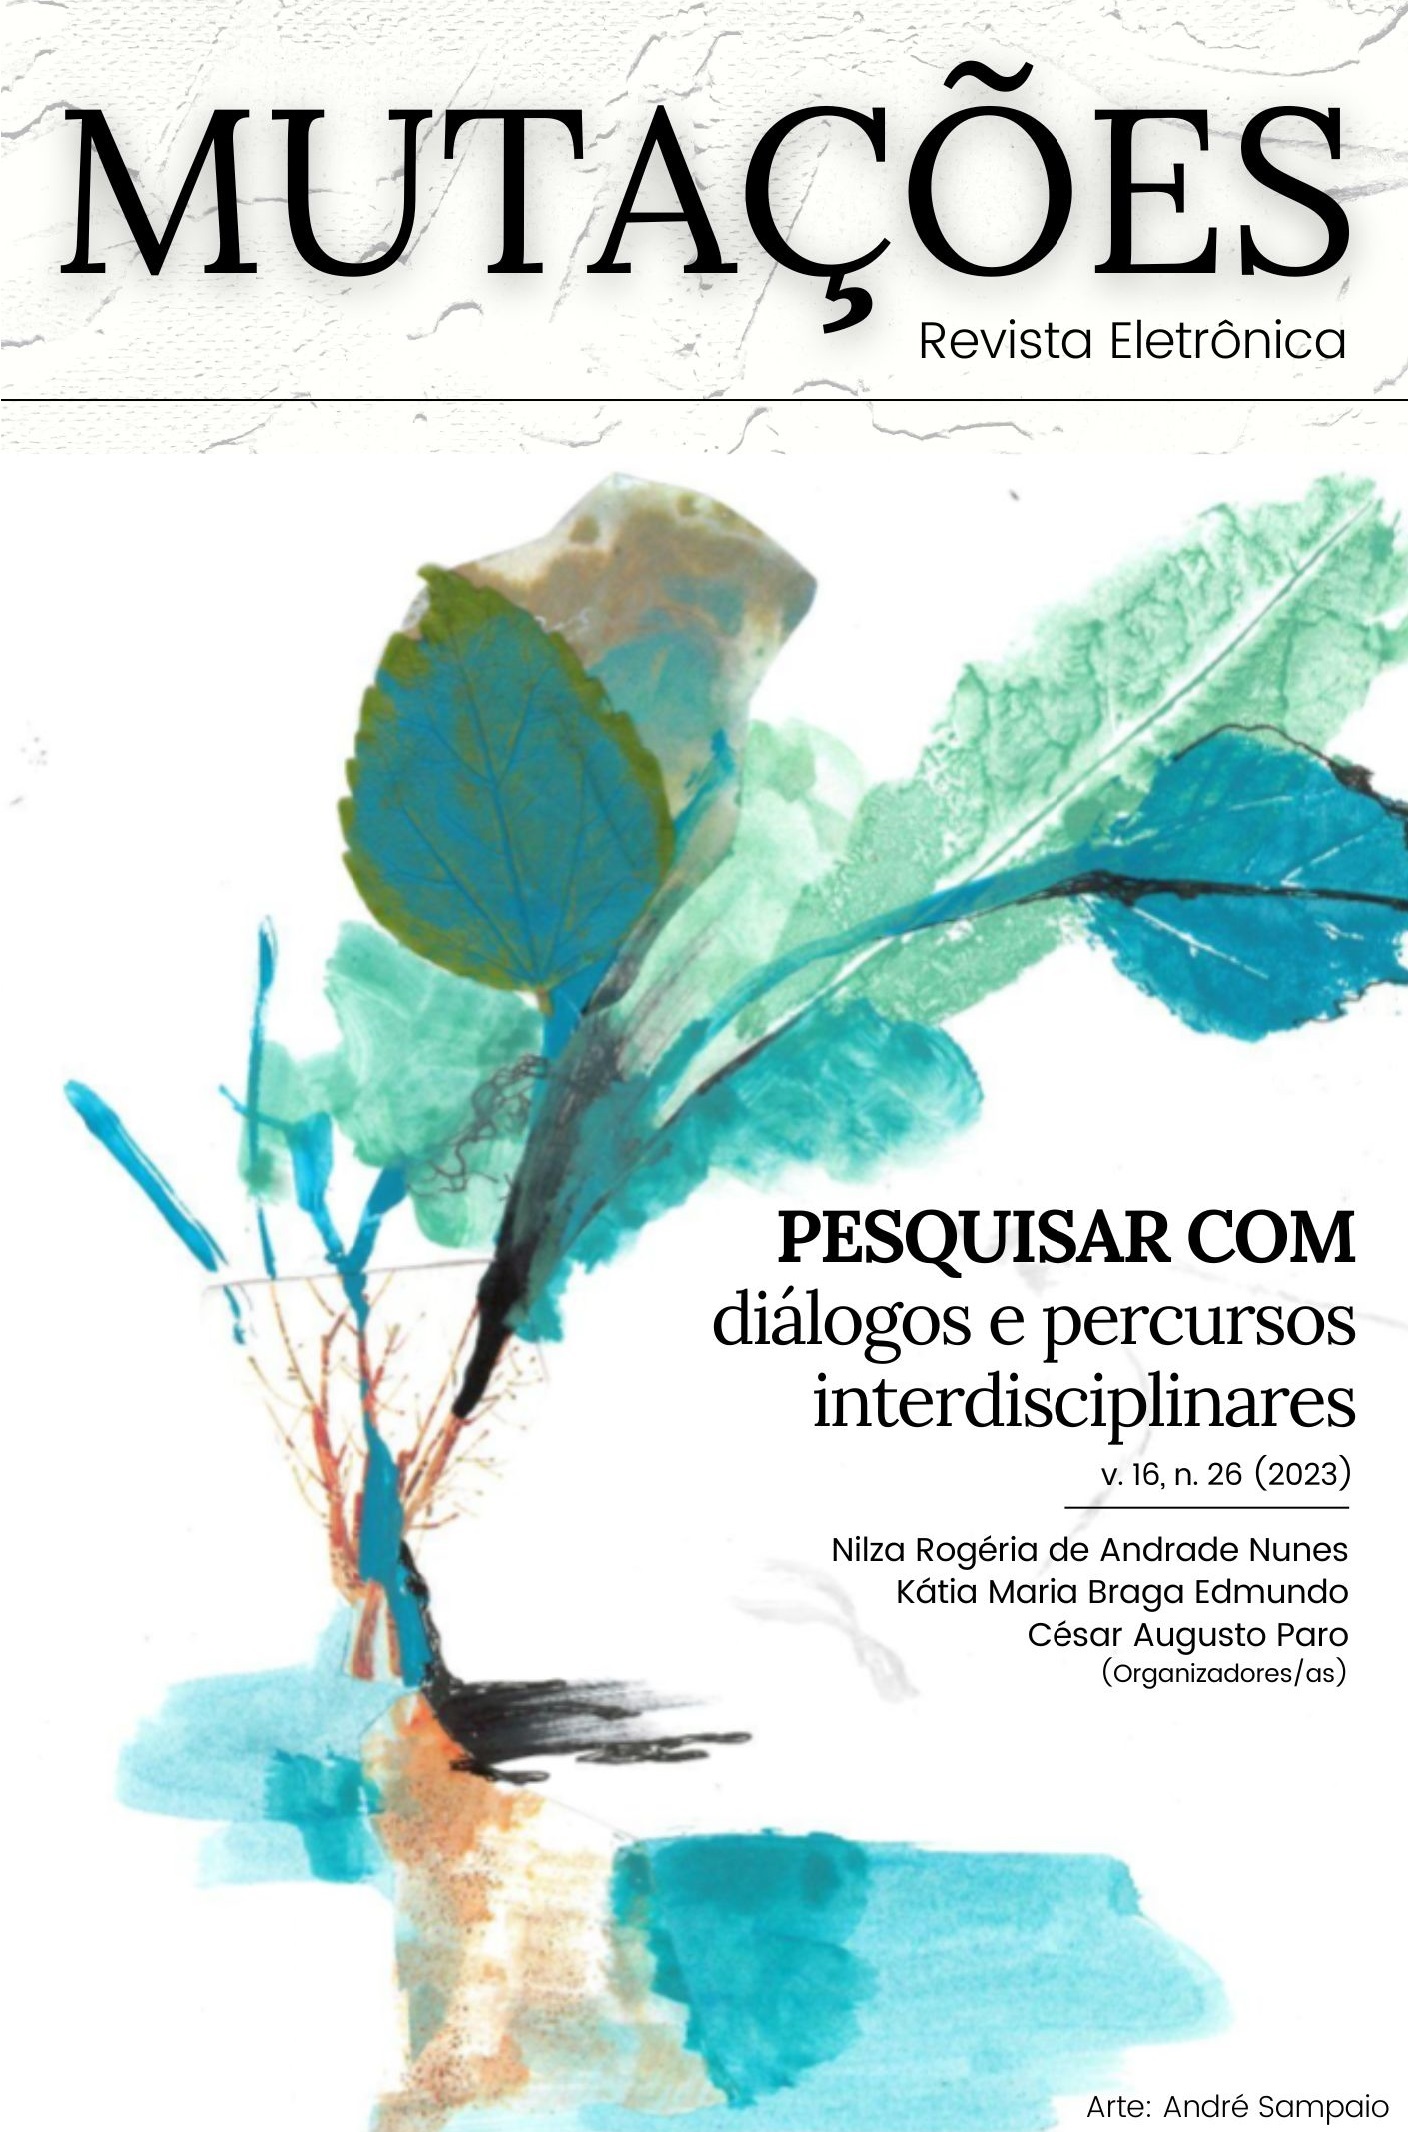 					Visualizar v. 16 n. 26 (2023): PESQUISAR COM: diálogos e percursos interdisciplinares
				